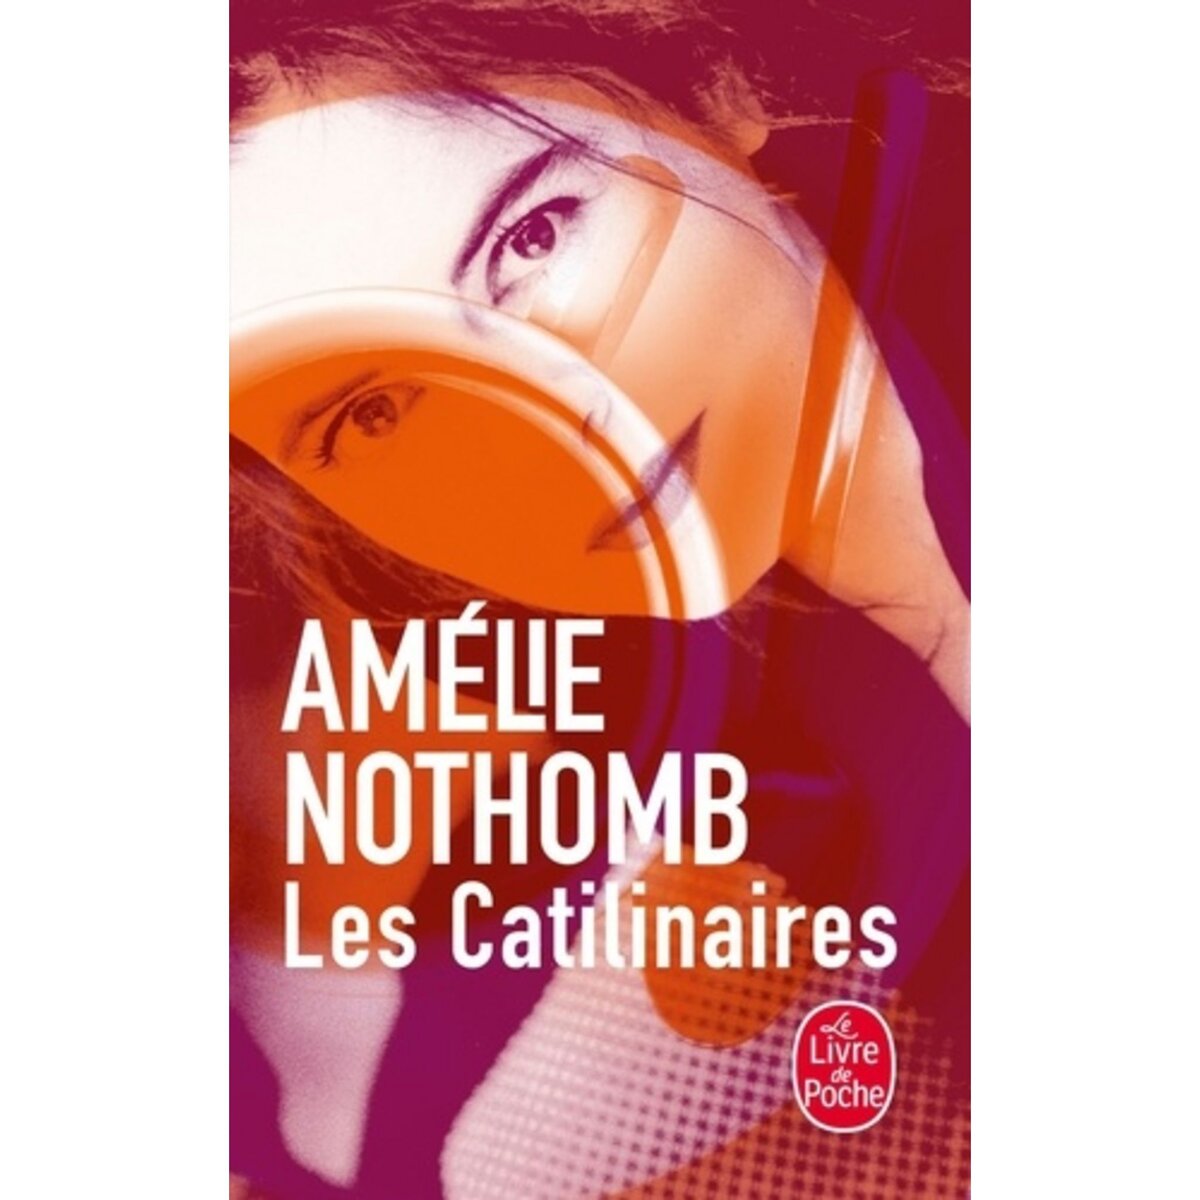  LES CATILINAIRES, Nothomb Amélie